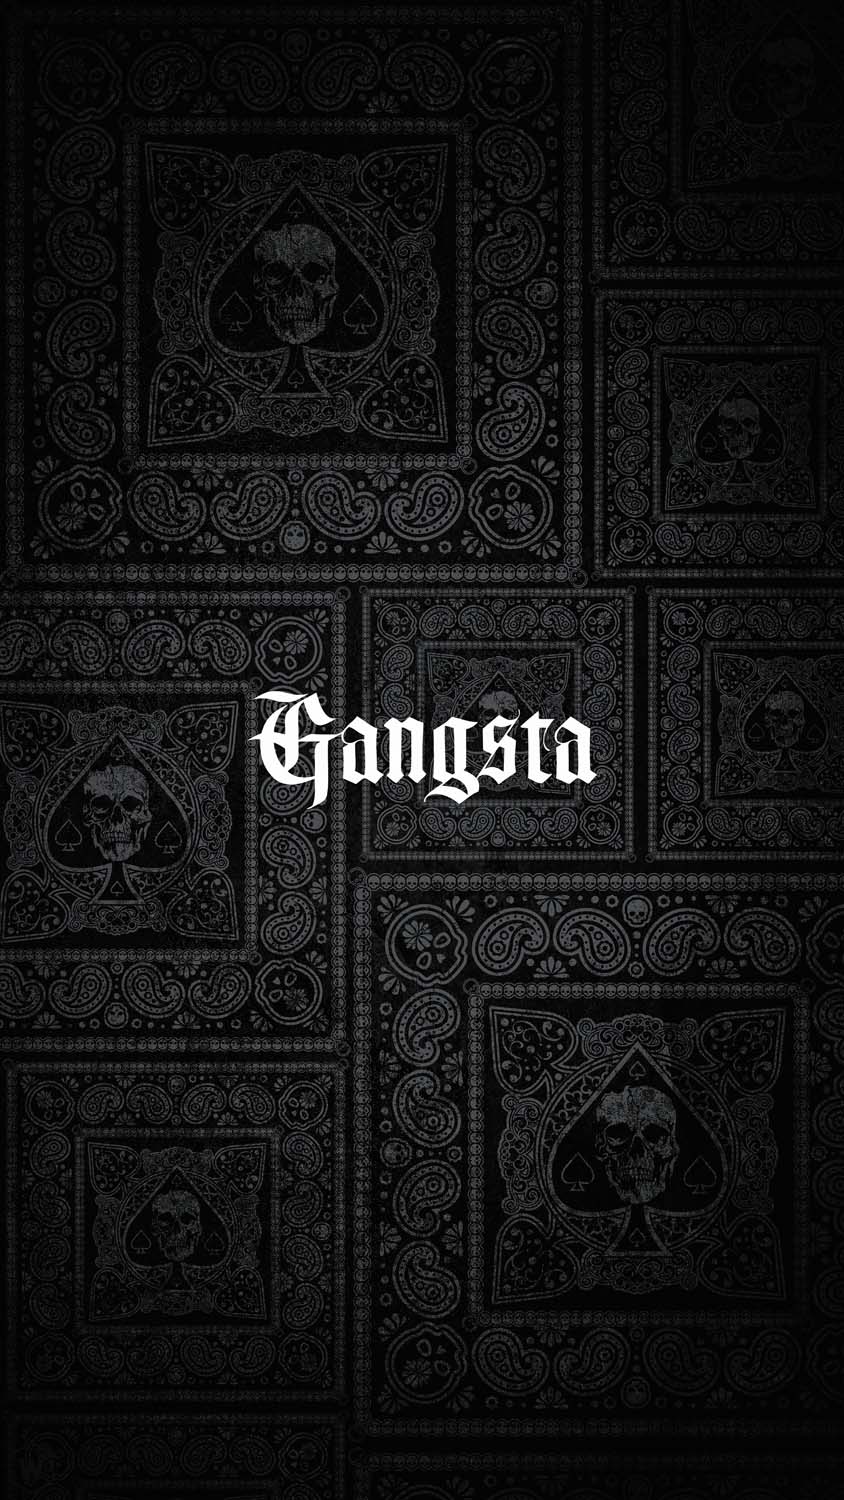 Gangsta iPhone Wallpaper HD